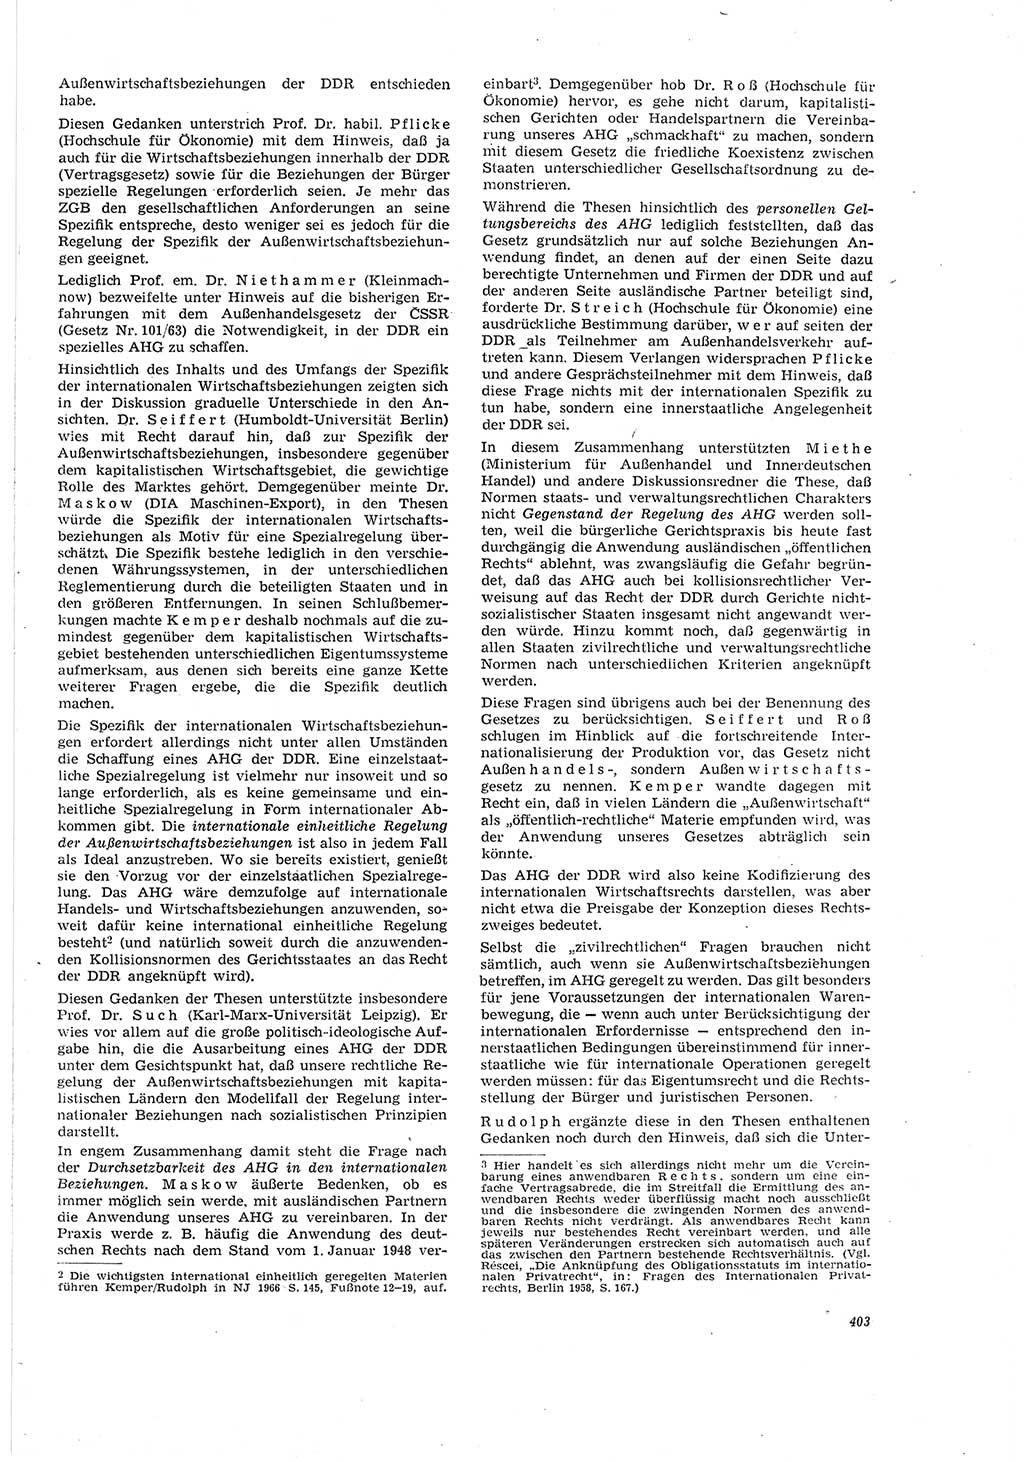 Neue Justiz (NJ), Zeitschrift für Recht und Rechtswissenschaft [Deutsche Demokratische Republik (DDR)], 20. Jahrgang 1966, Seite 403 (NJ DDR 1966, S. 403)